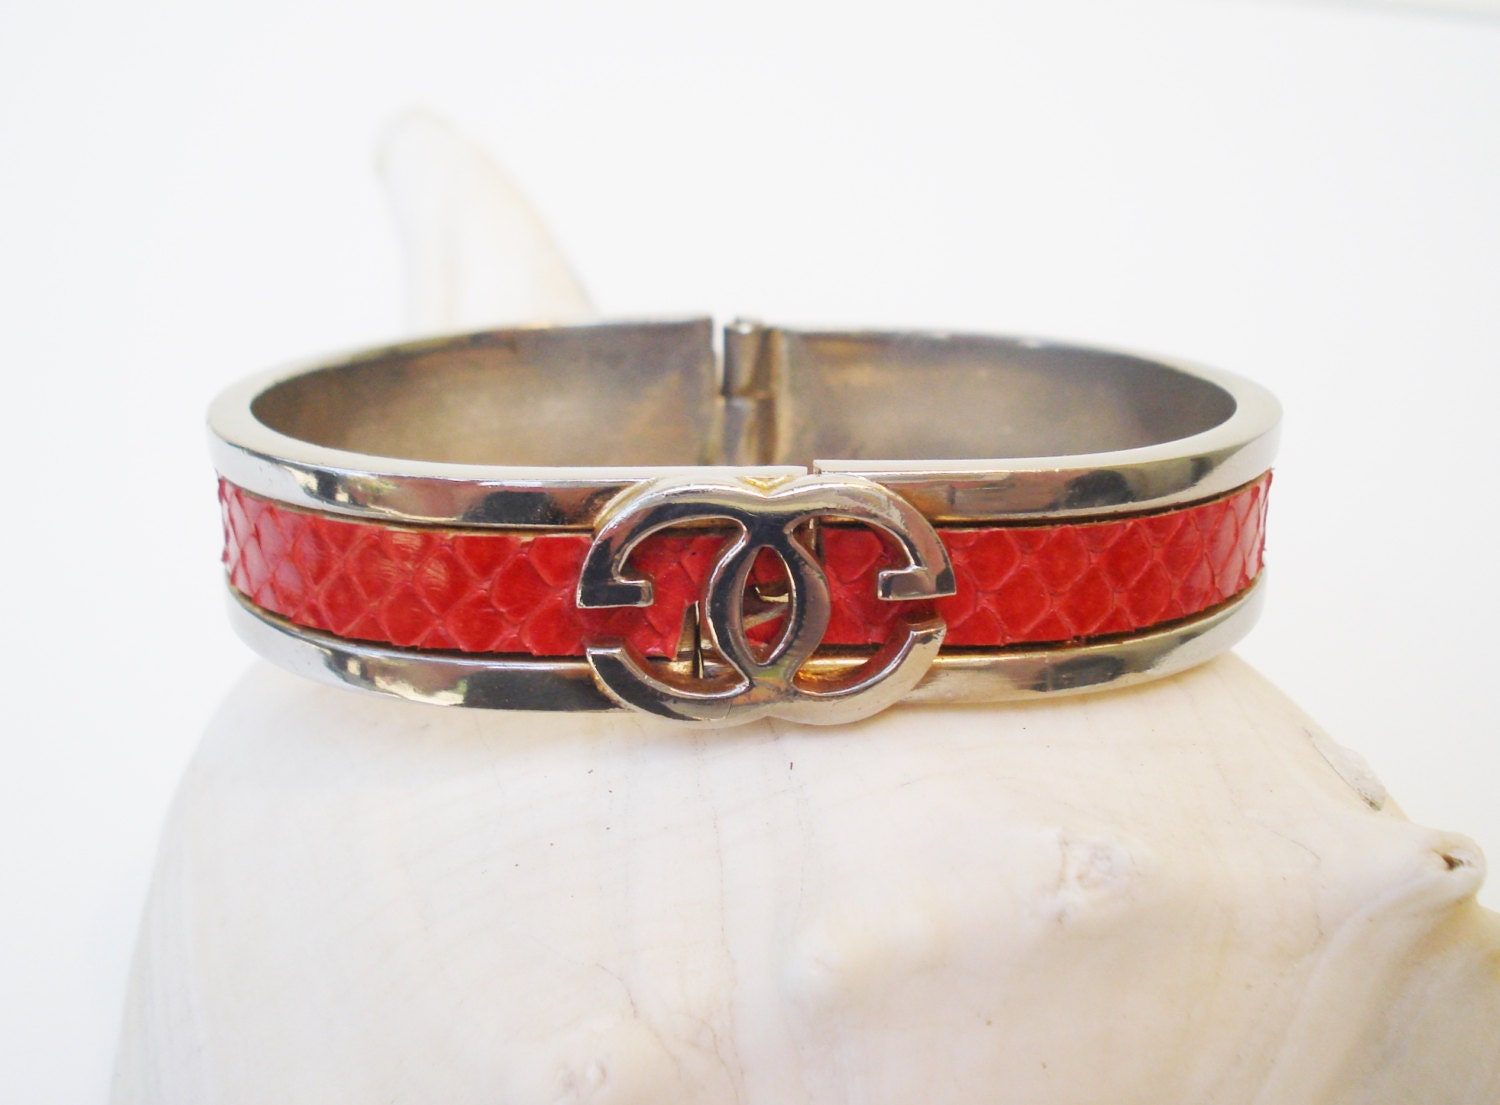 Vintage Clamper Bracelet Red Snake Skin and Silver Colored Metal / Vintage Bracelet / Red Bracelet / Snake Skin Bracelet / 7 inch Bracelet - AlegriaCollection